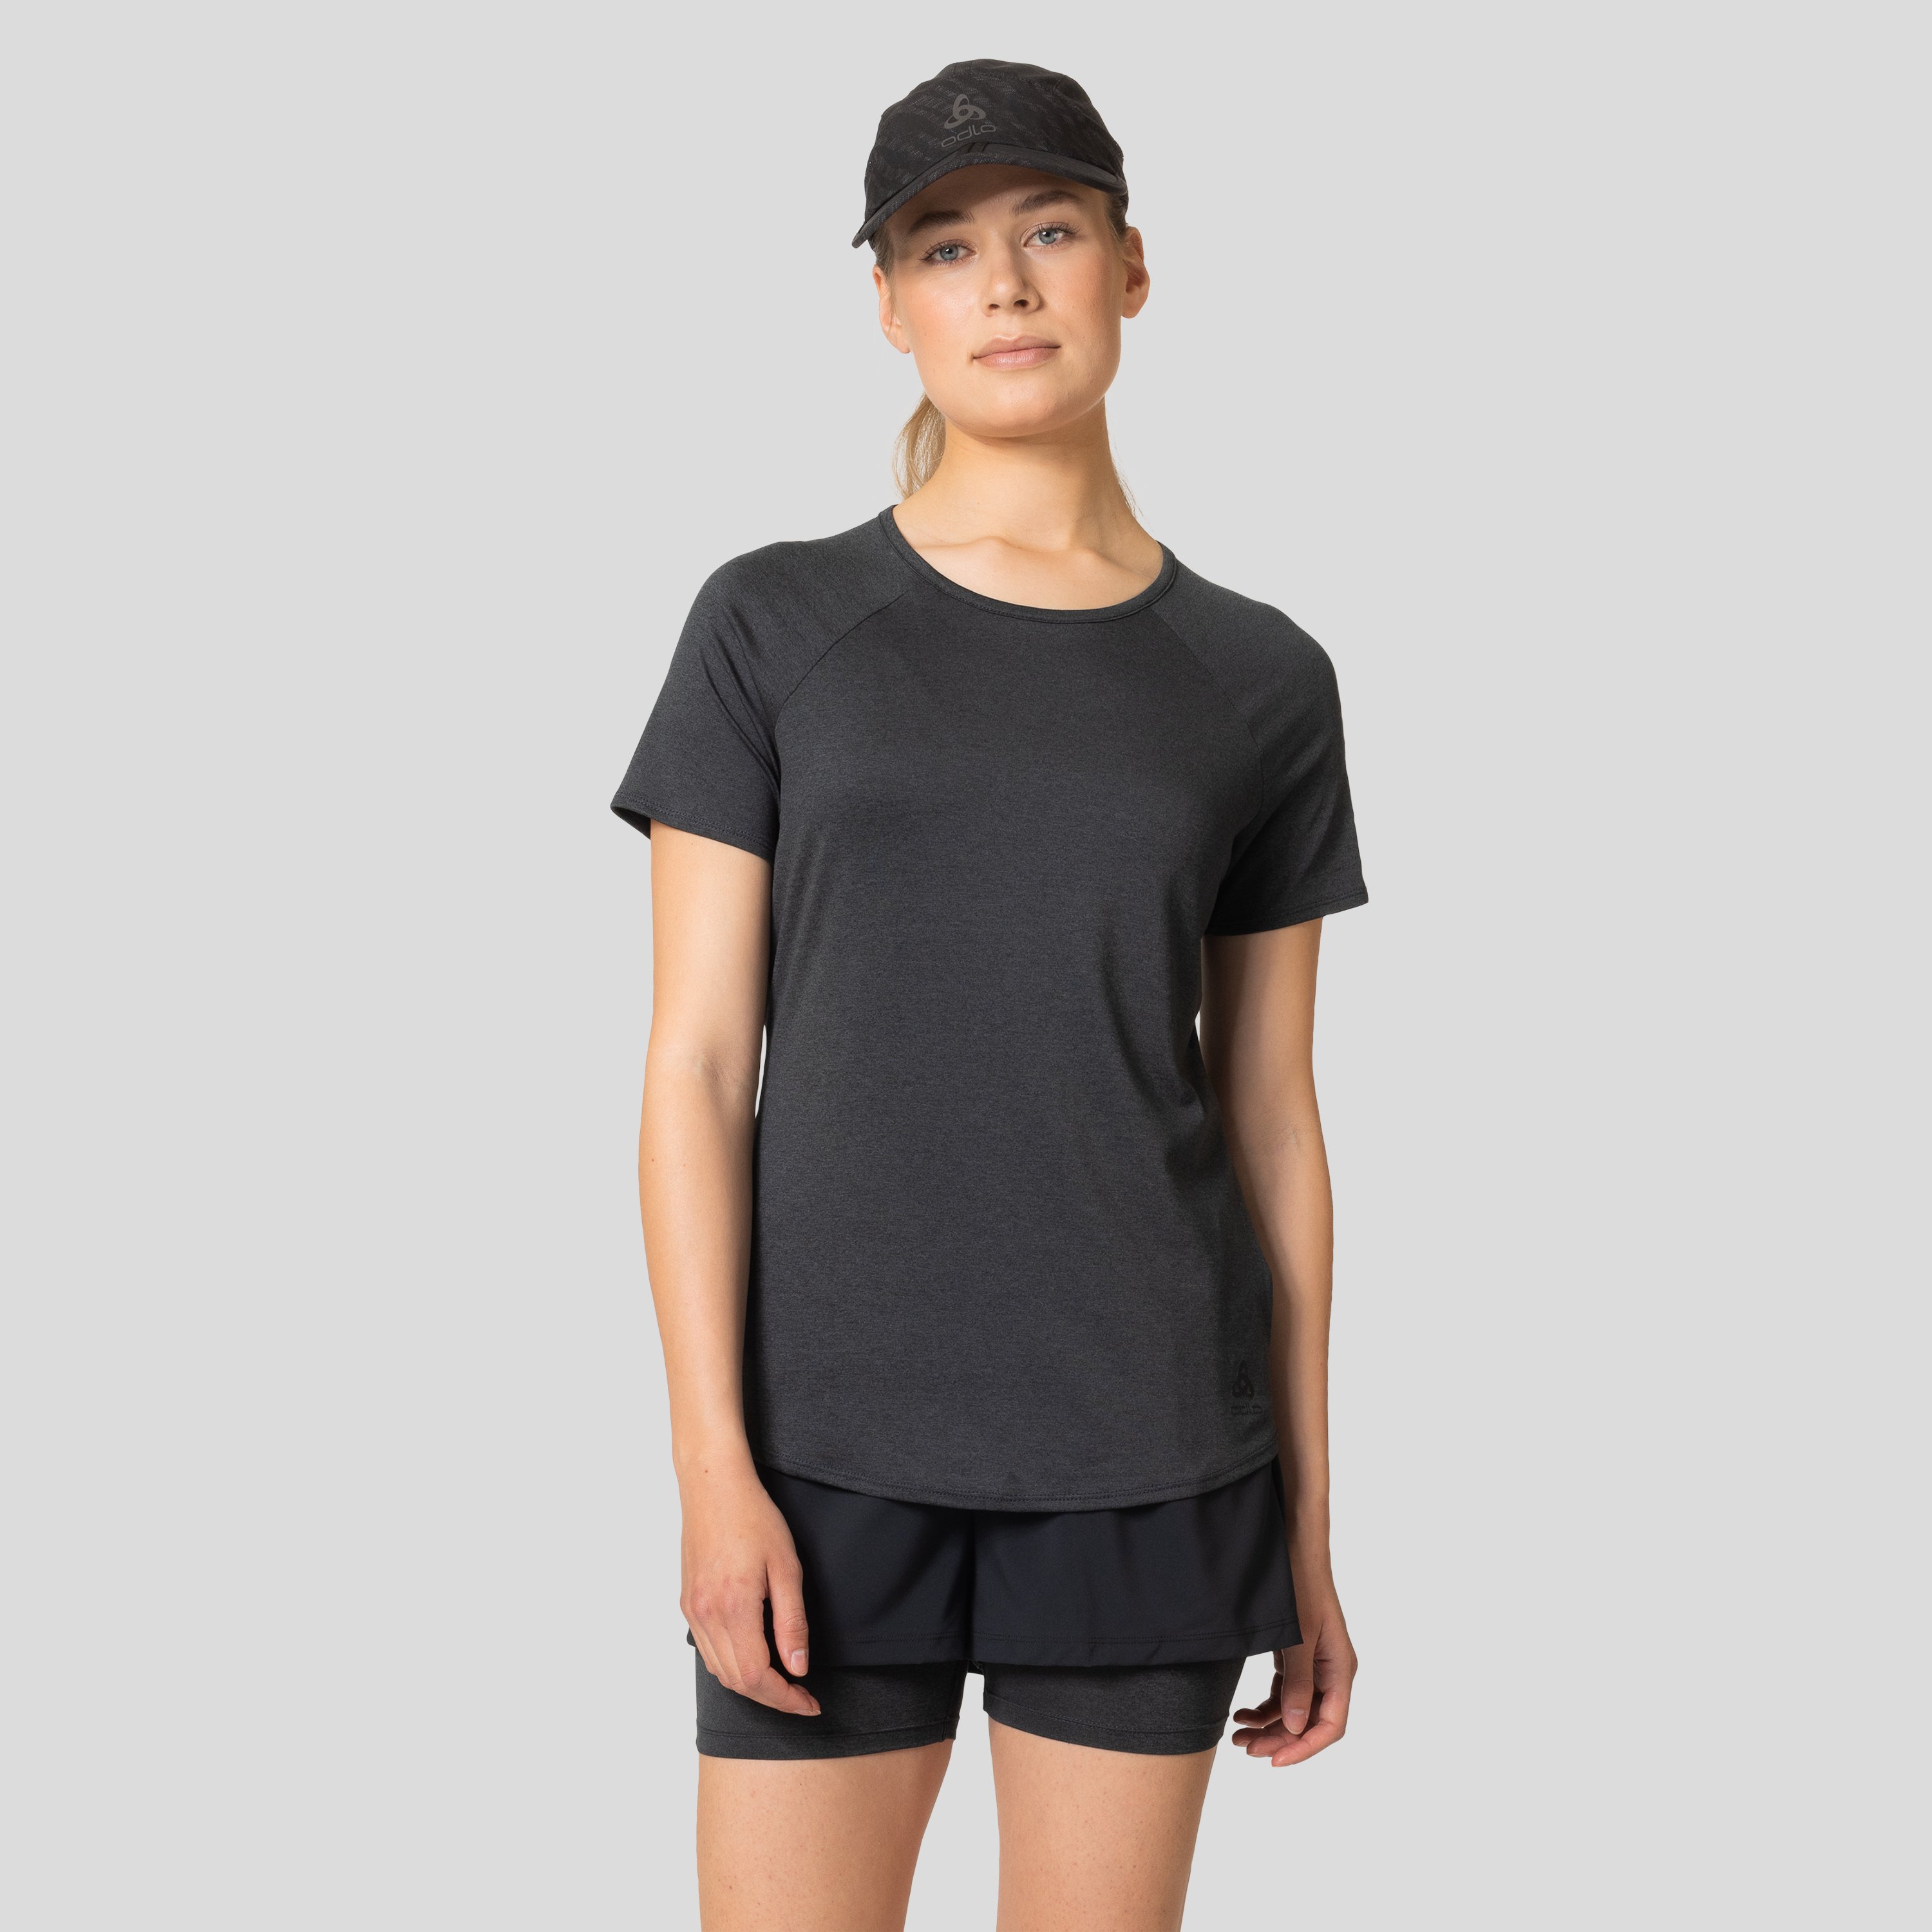 ODLO Active 365 T-Shirt für Damen, S, schwarz